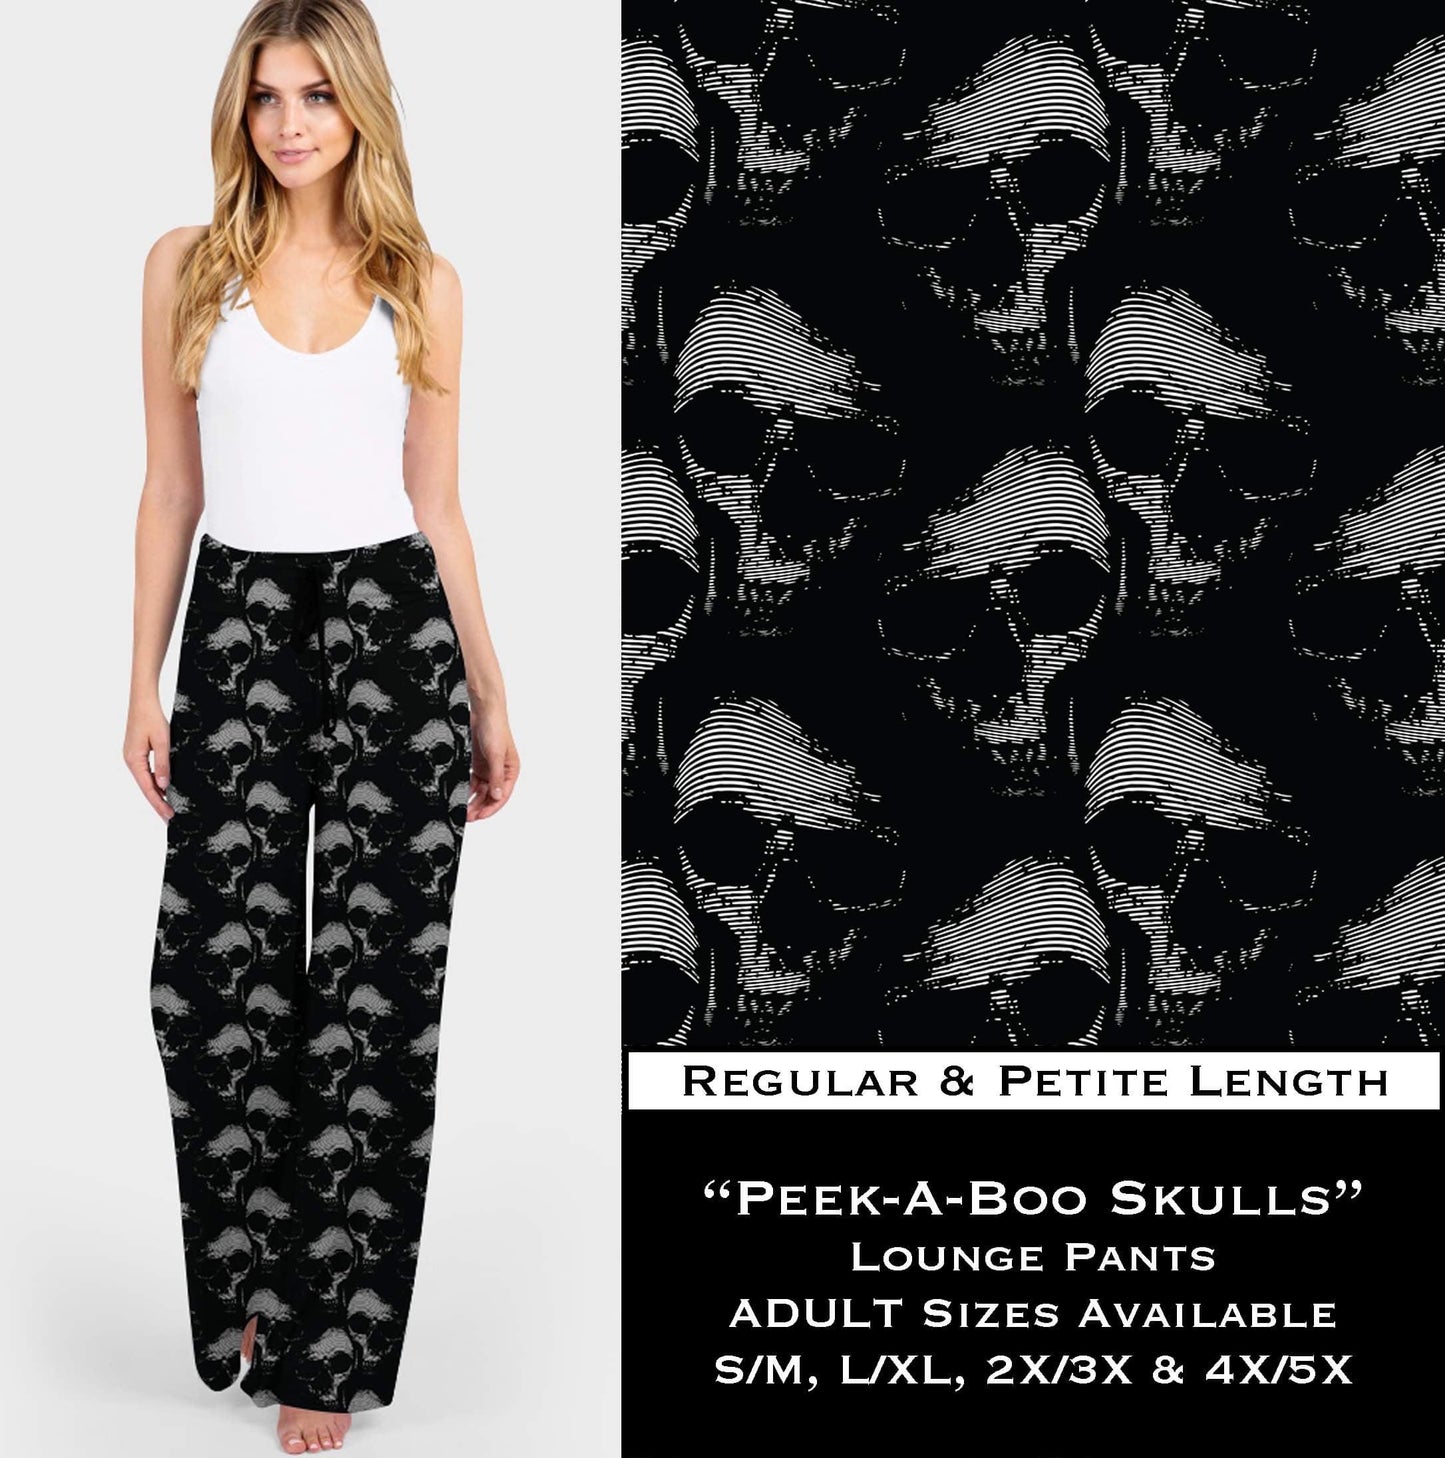 Peek-a-boo Skulls - Lounge Pants